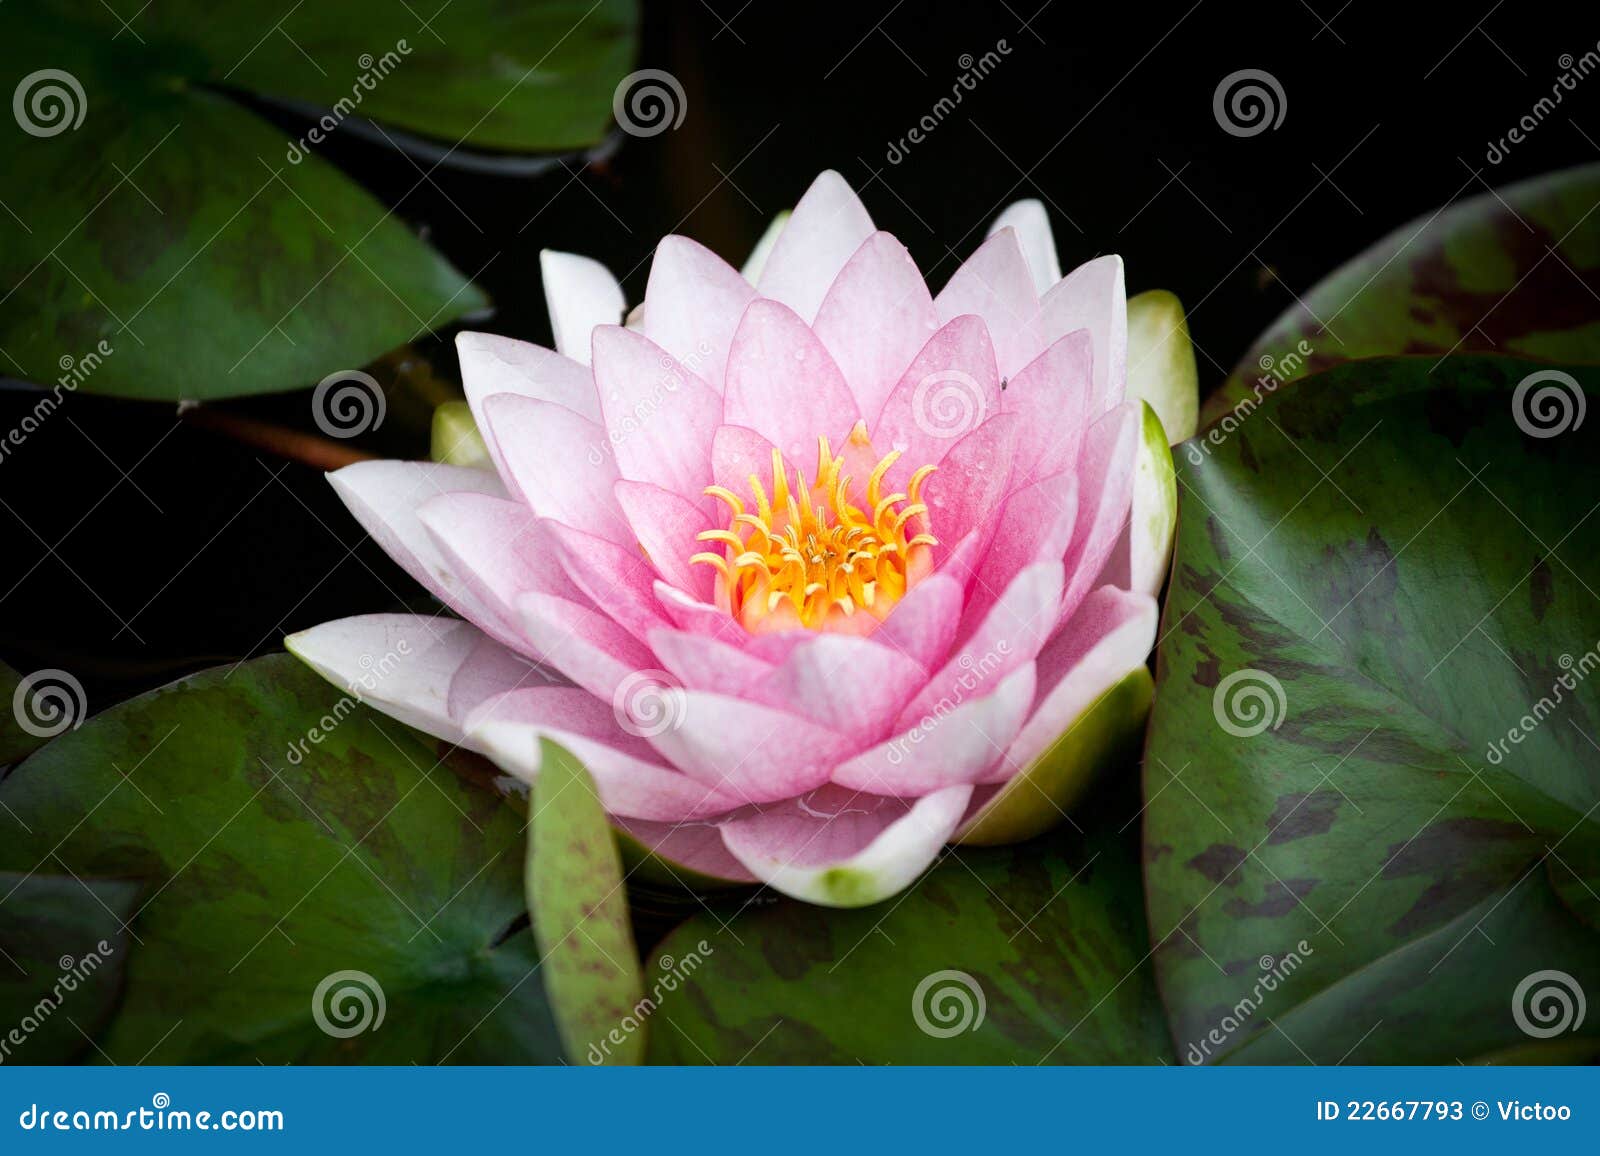 Flor del lirio de agua imagen de archivo. Imagen de agua - 22667793